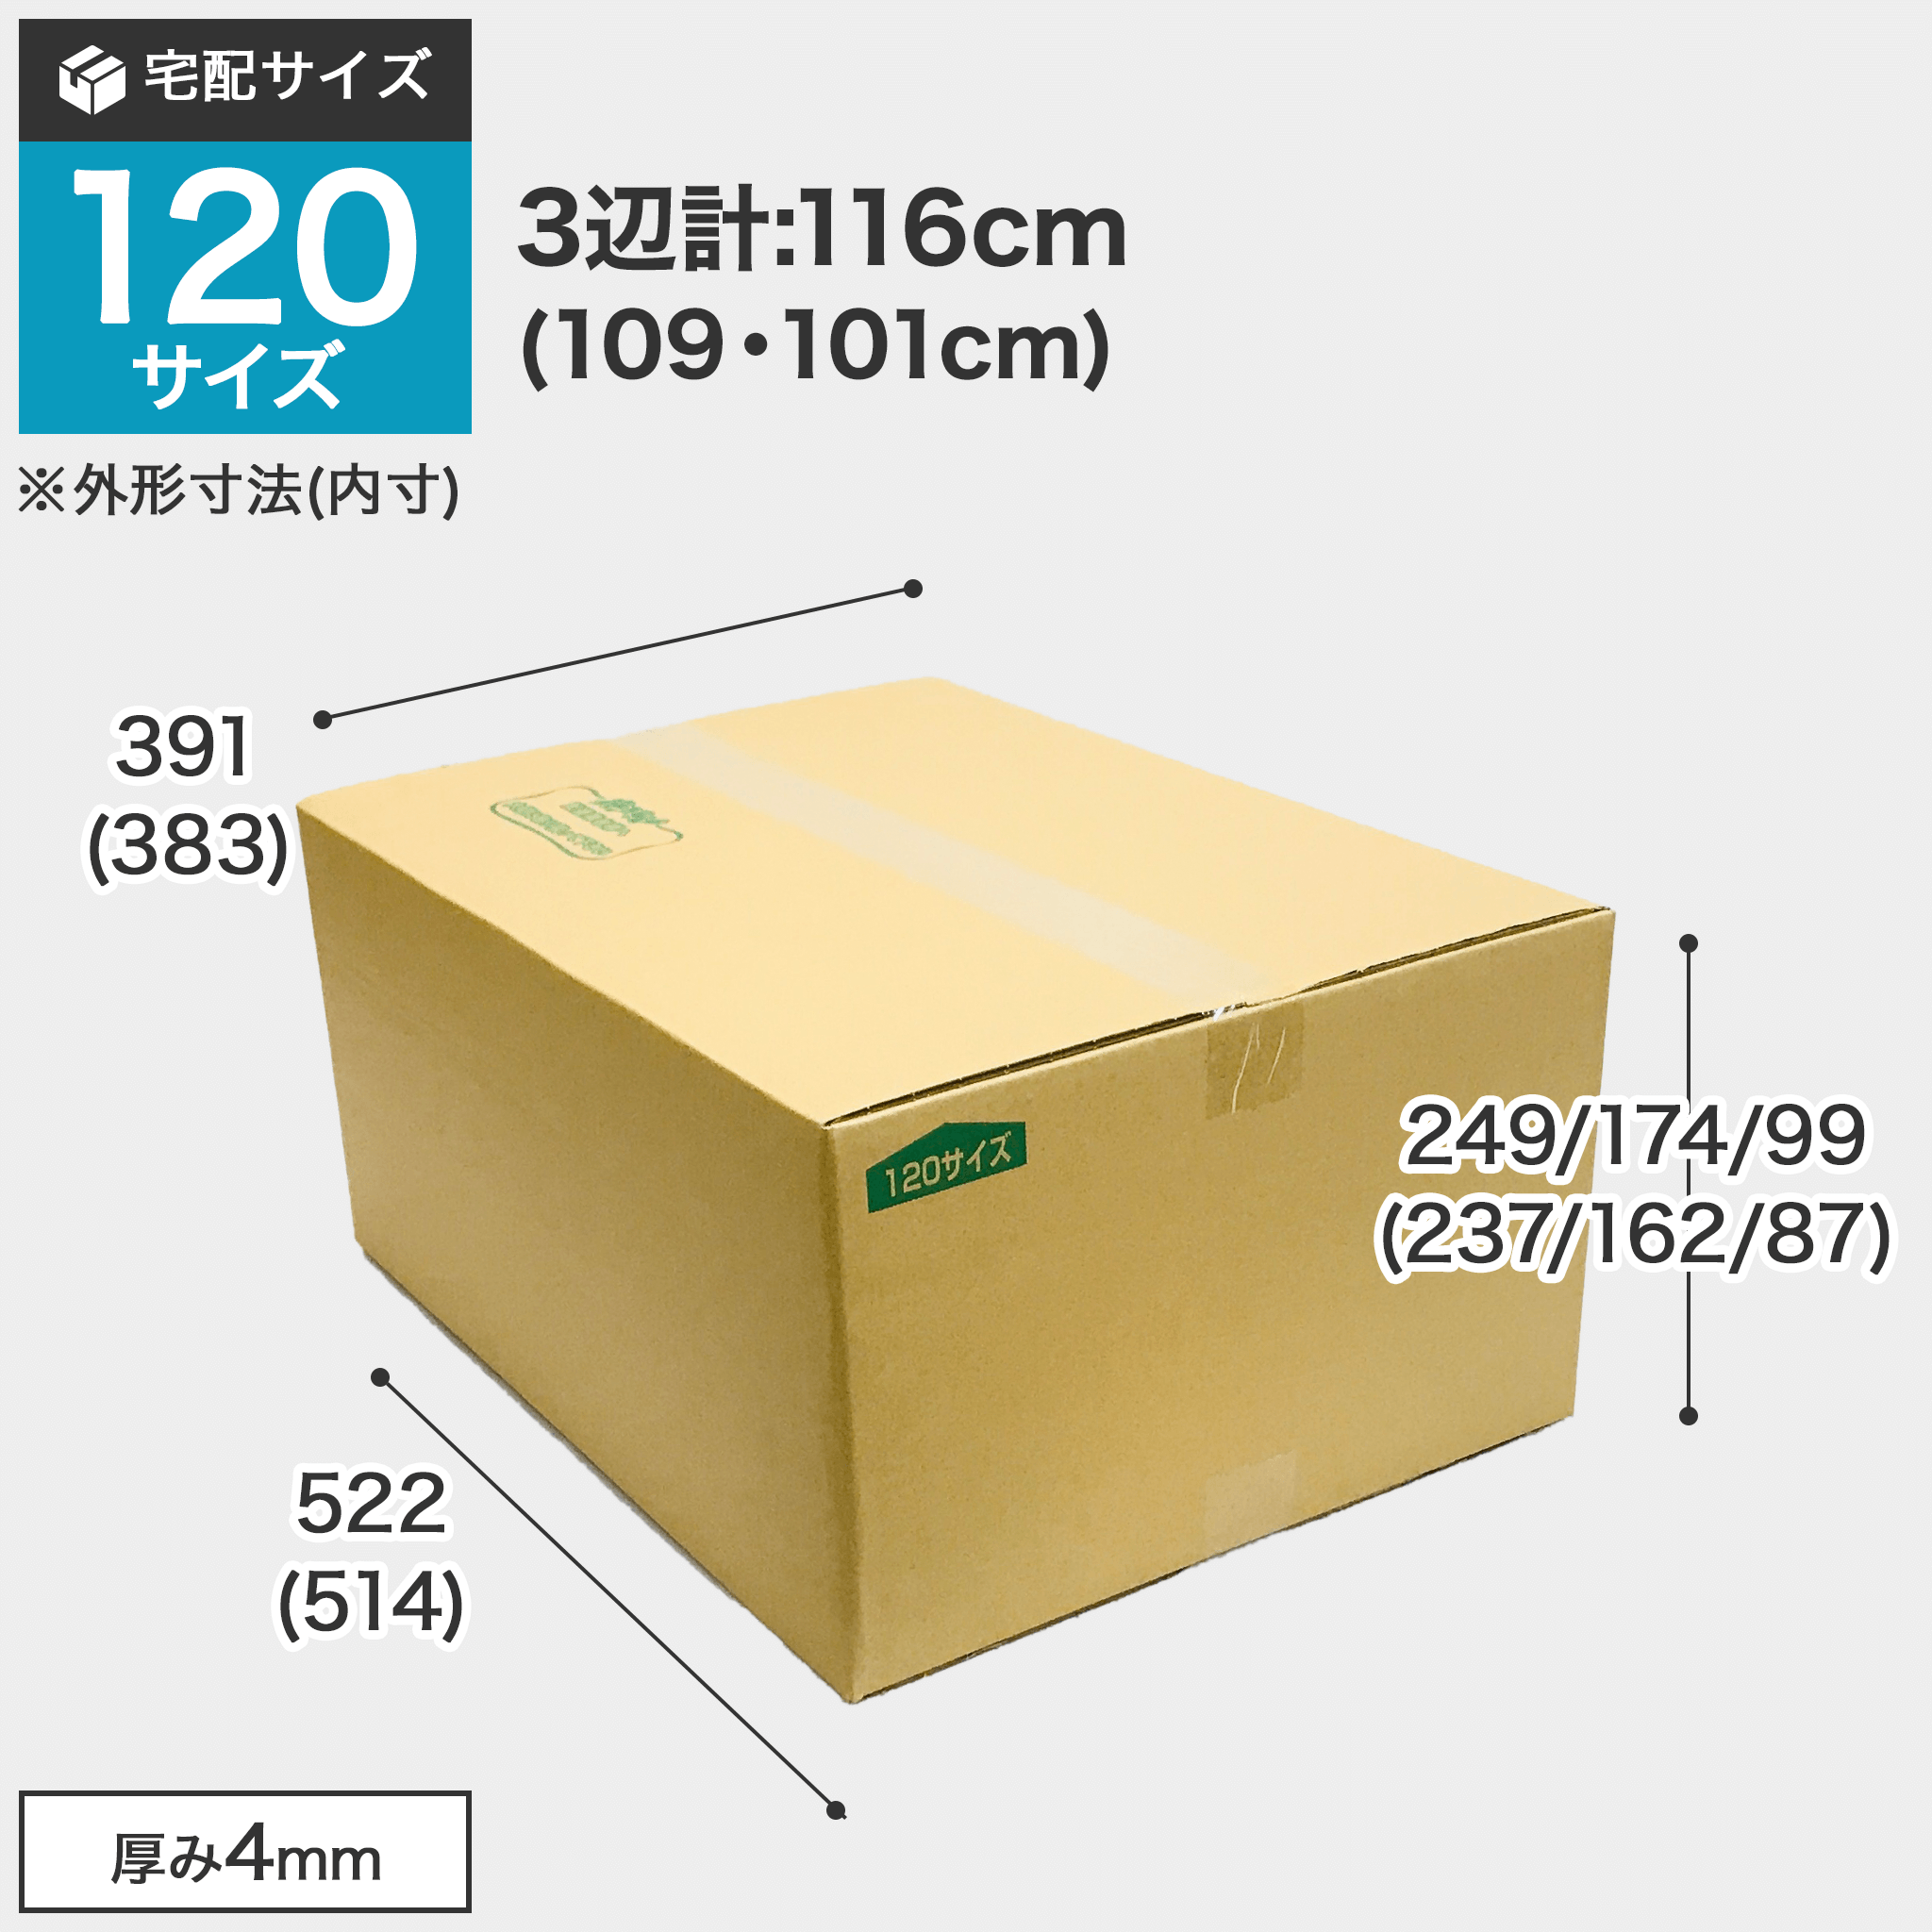 宅配120サイズのダンボール箱 3辺合計約116cm 宅配120サイズのダンボール箱ですが、罫線まで裁ち下げるとコンパクトになります。